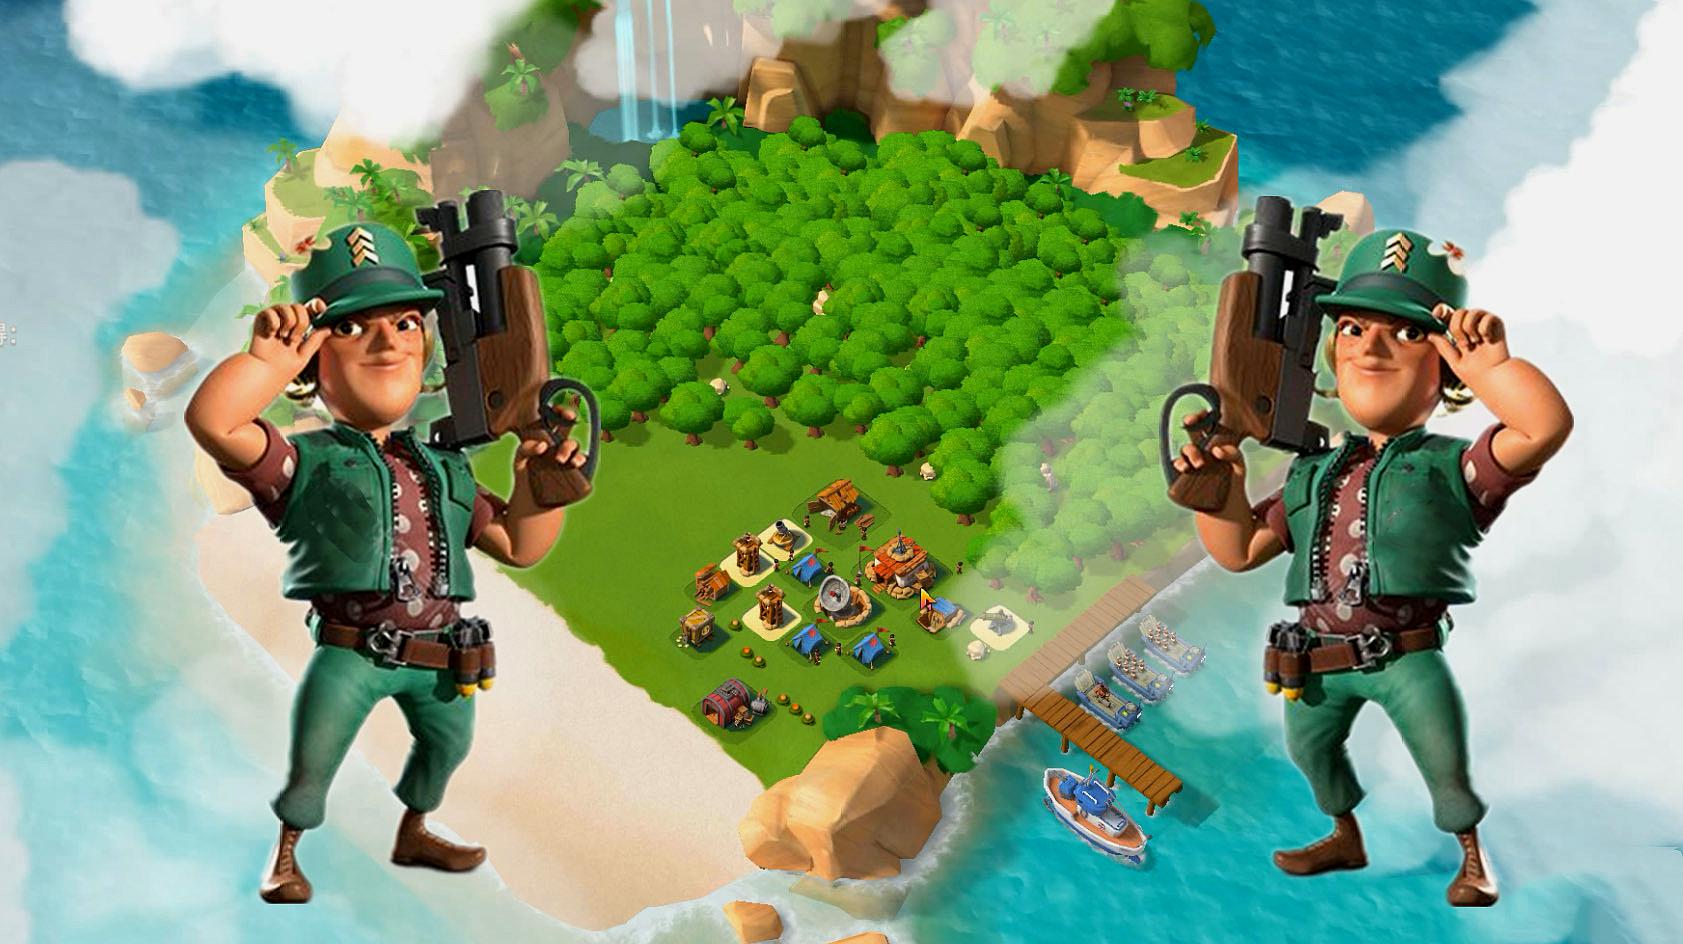 游戏世界:经营策略类游戏《海岛奇兵》的精彩合集